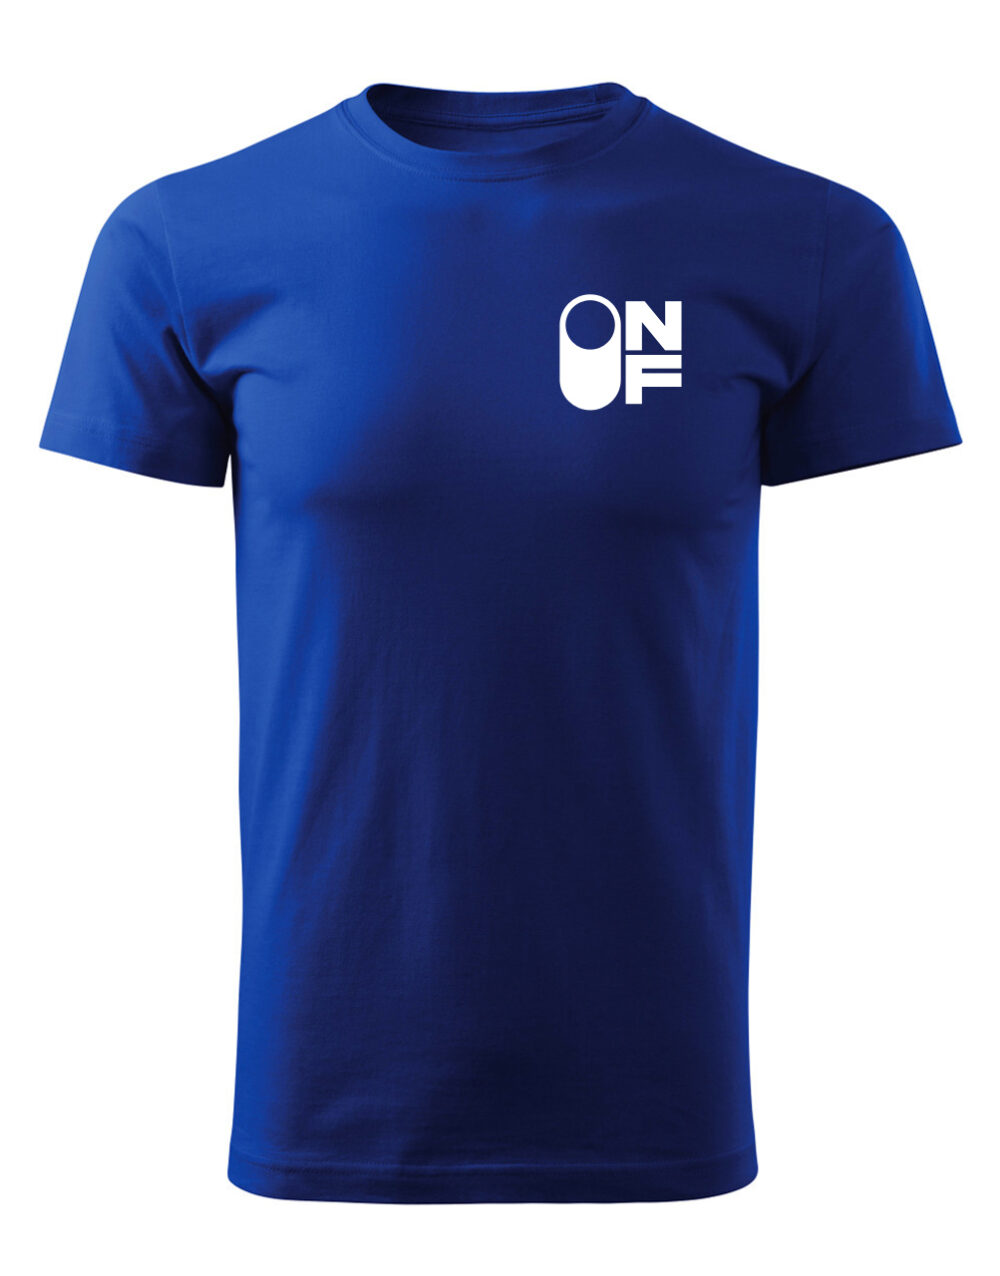 Pánské tričko s potiskem ON-OF královská modrá